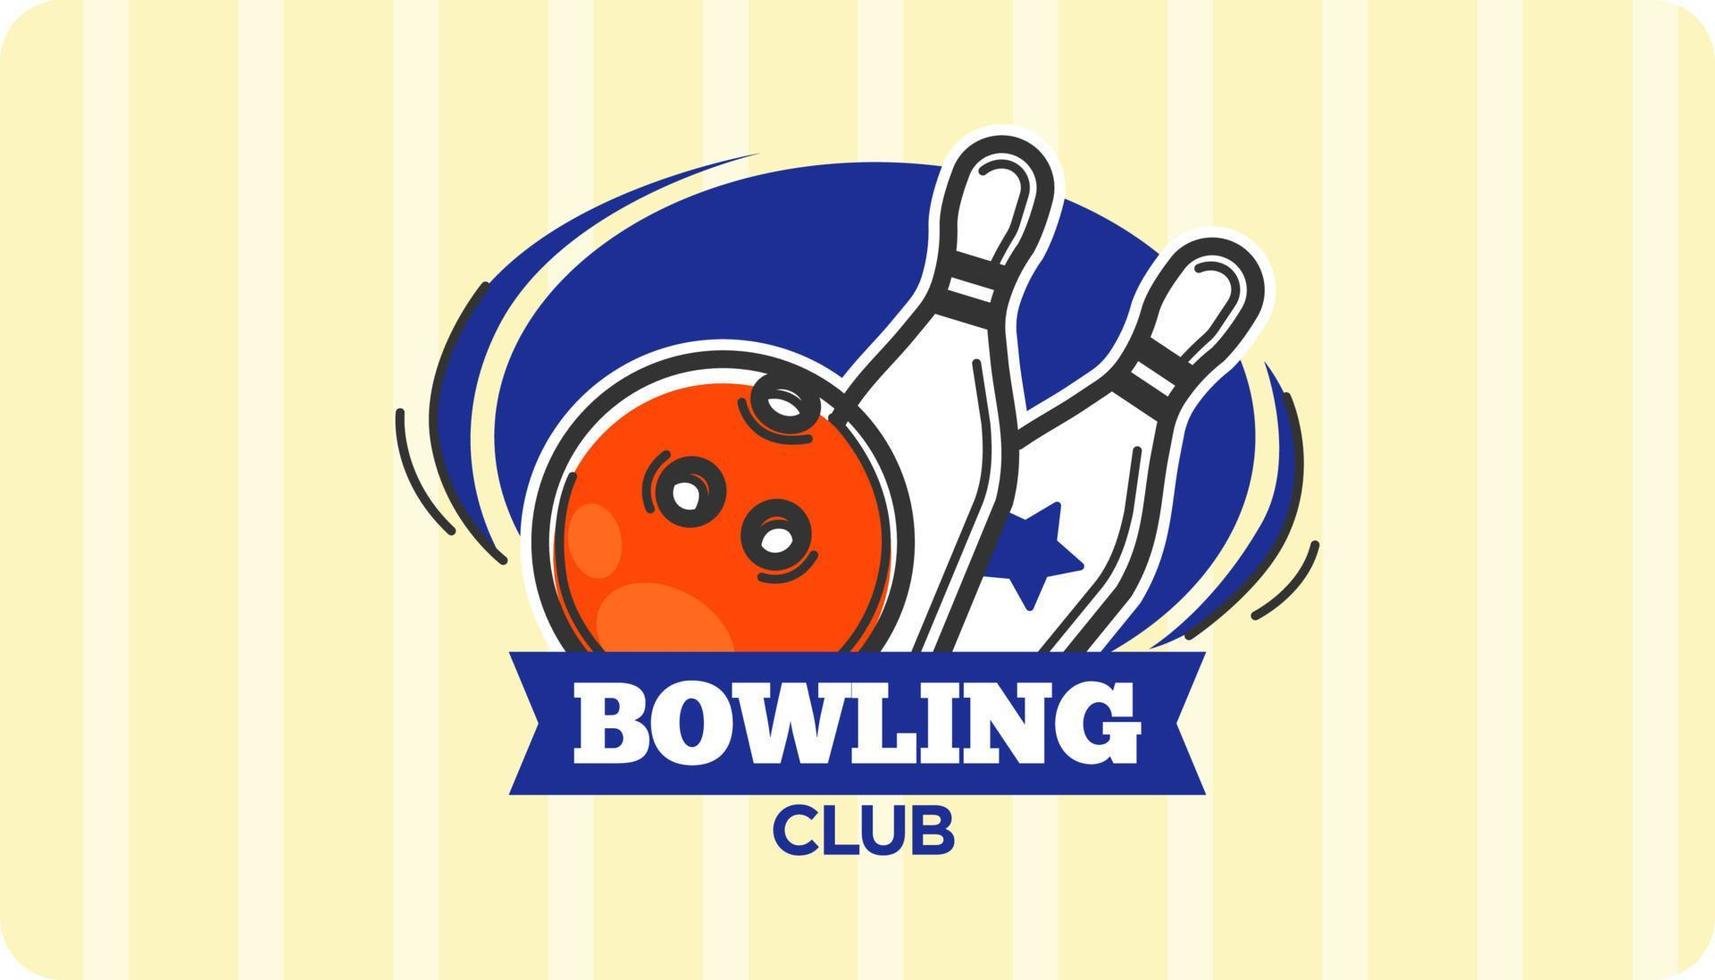 bowling klubb rekreation och sporter för roligt vektor